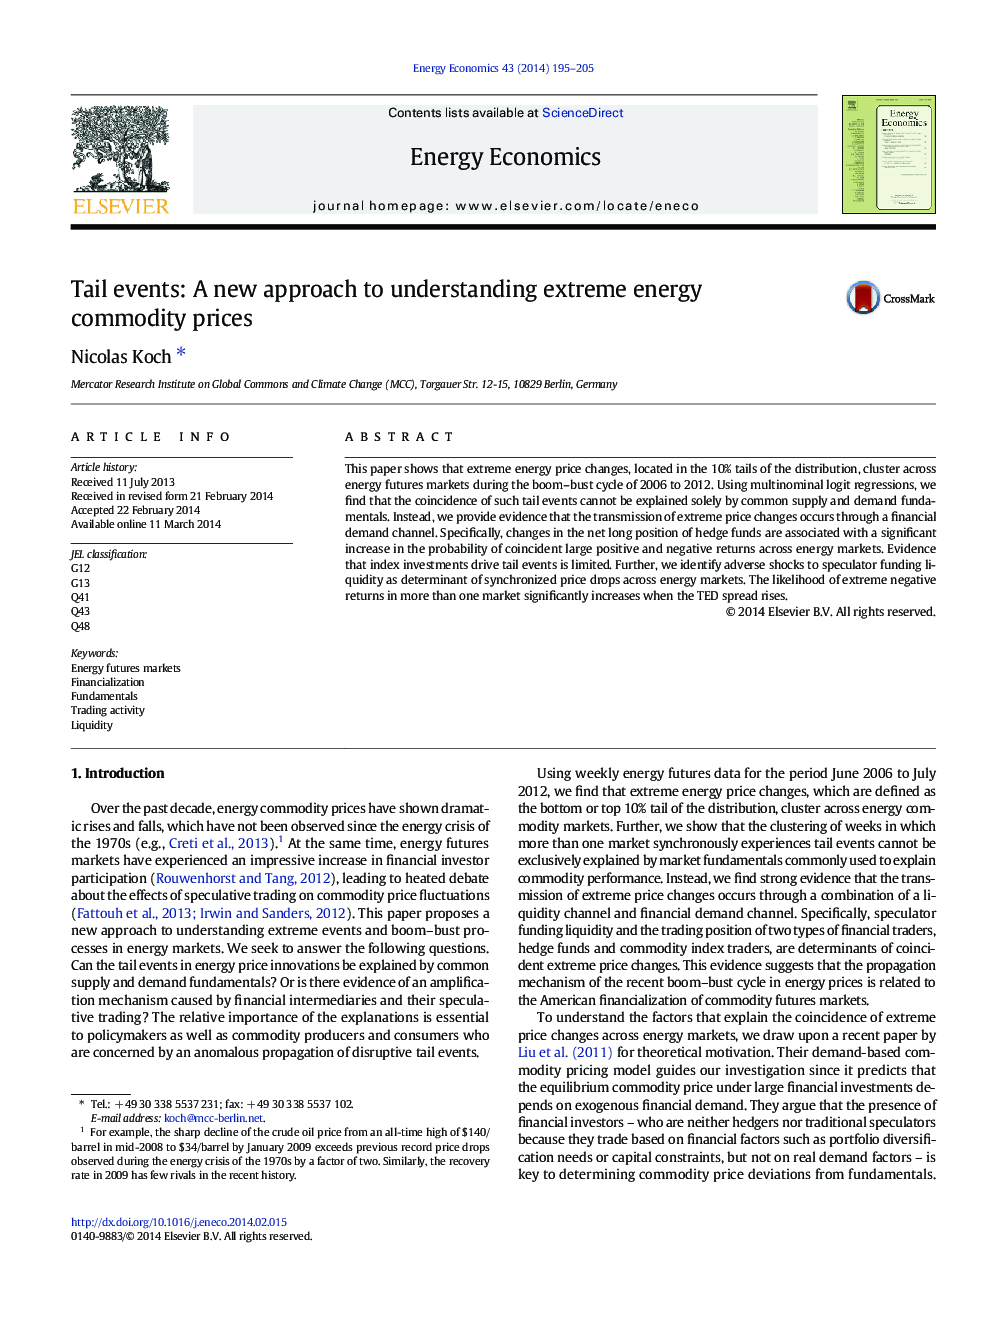 رویدادهای دم: یک رویکرد جدید برای درک فرآورده های قیمت مواد انرژی 